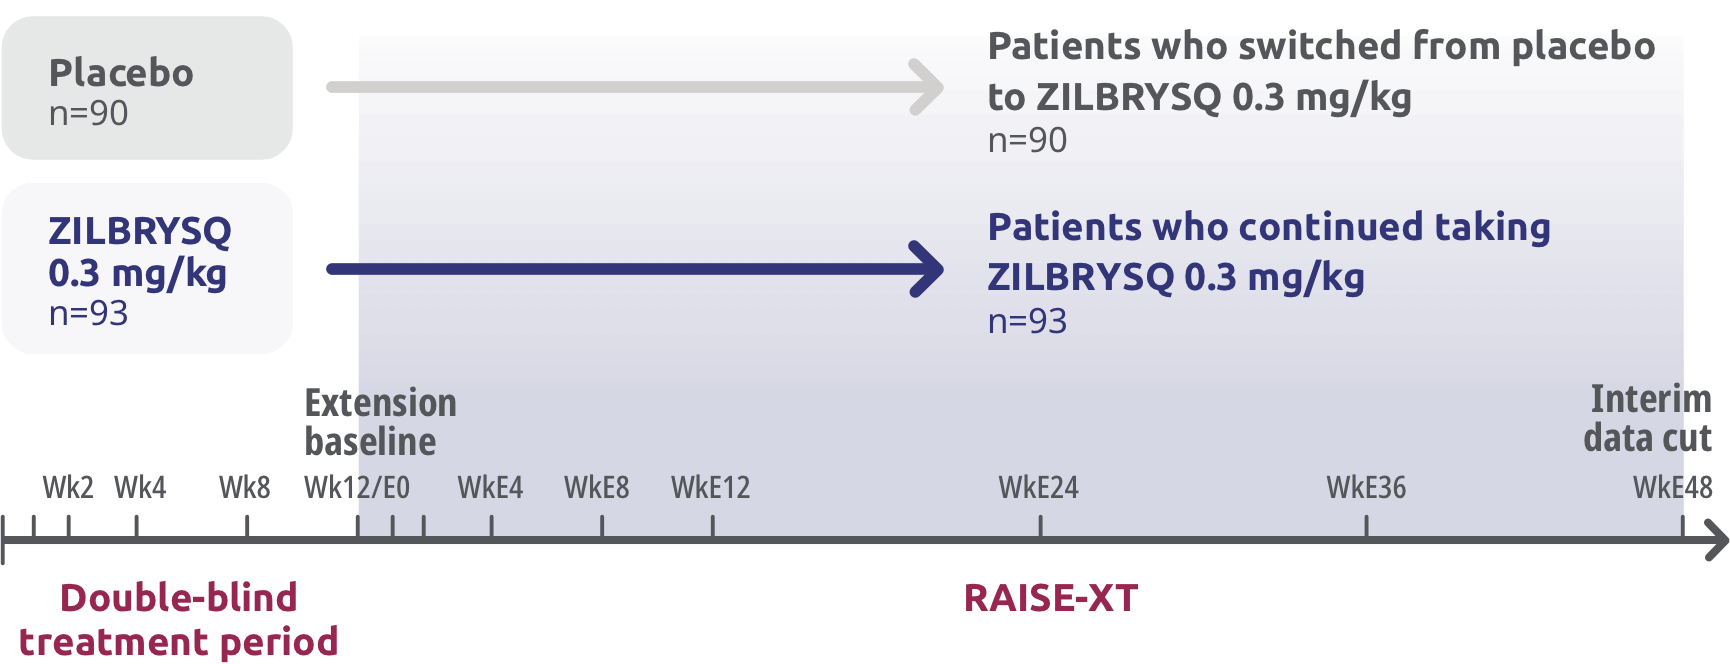 RAISE-XT: Open-Label Extension